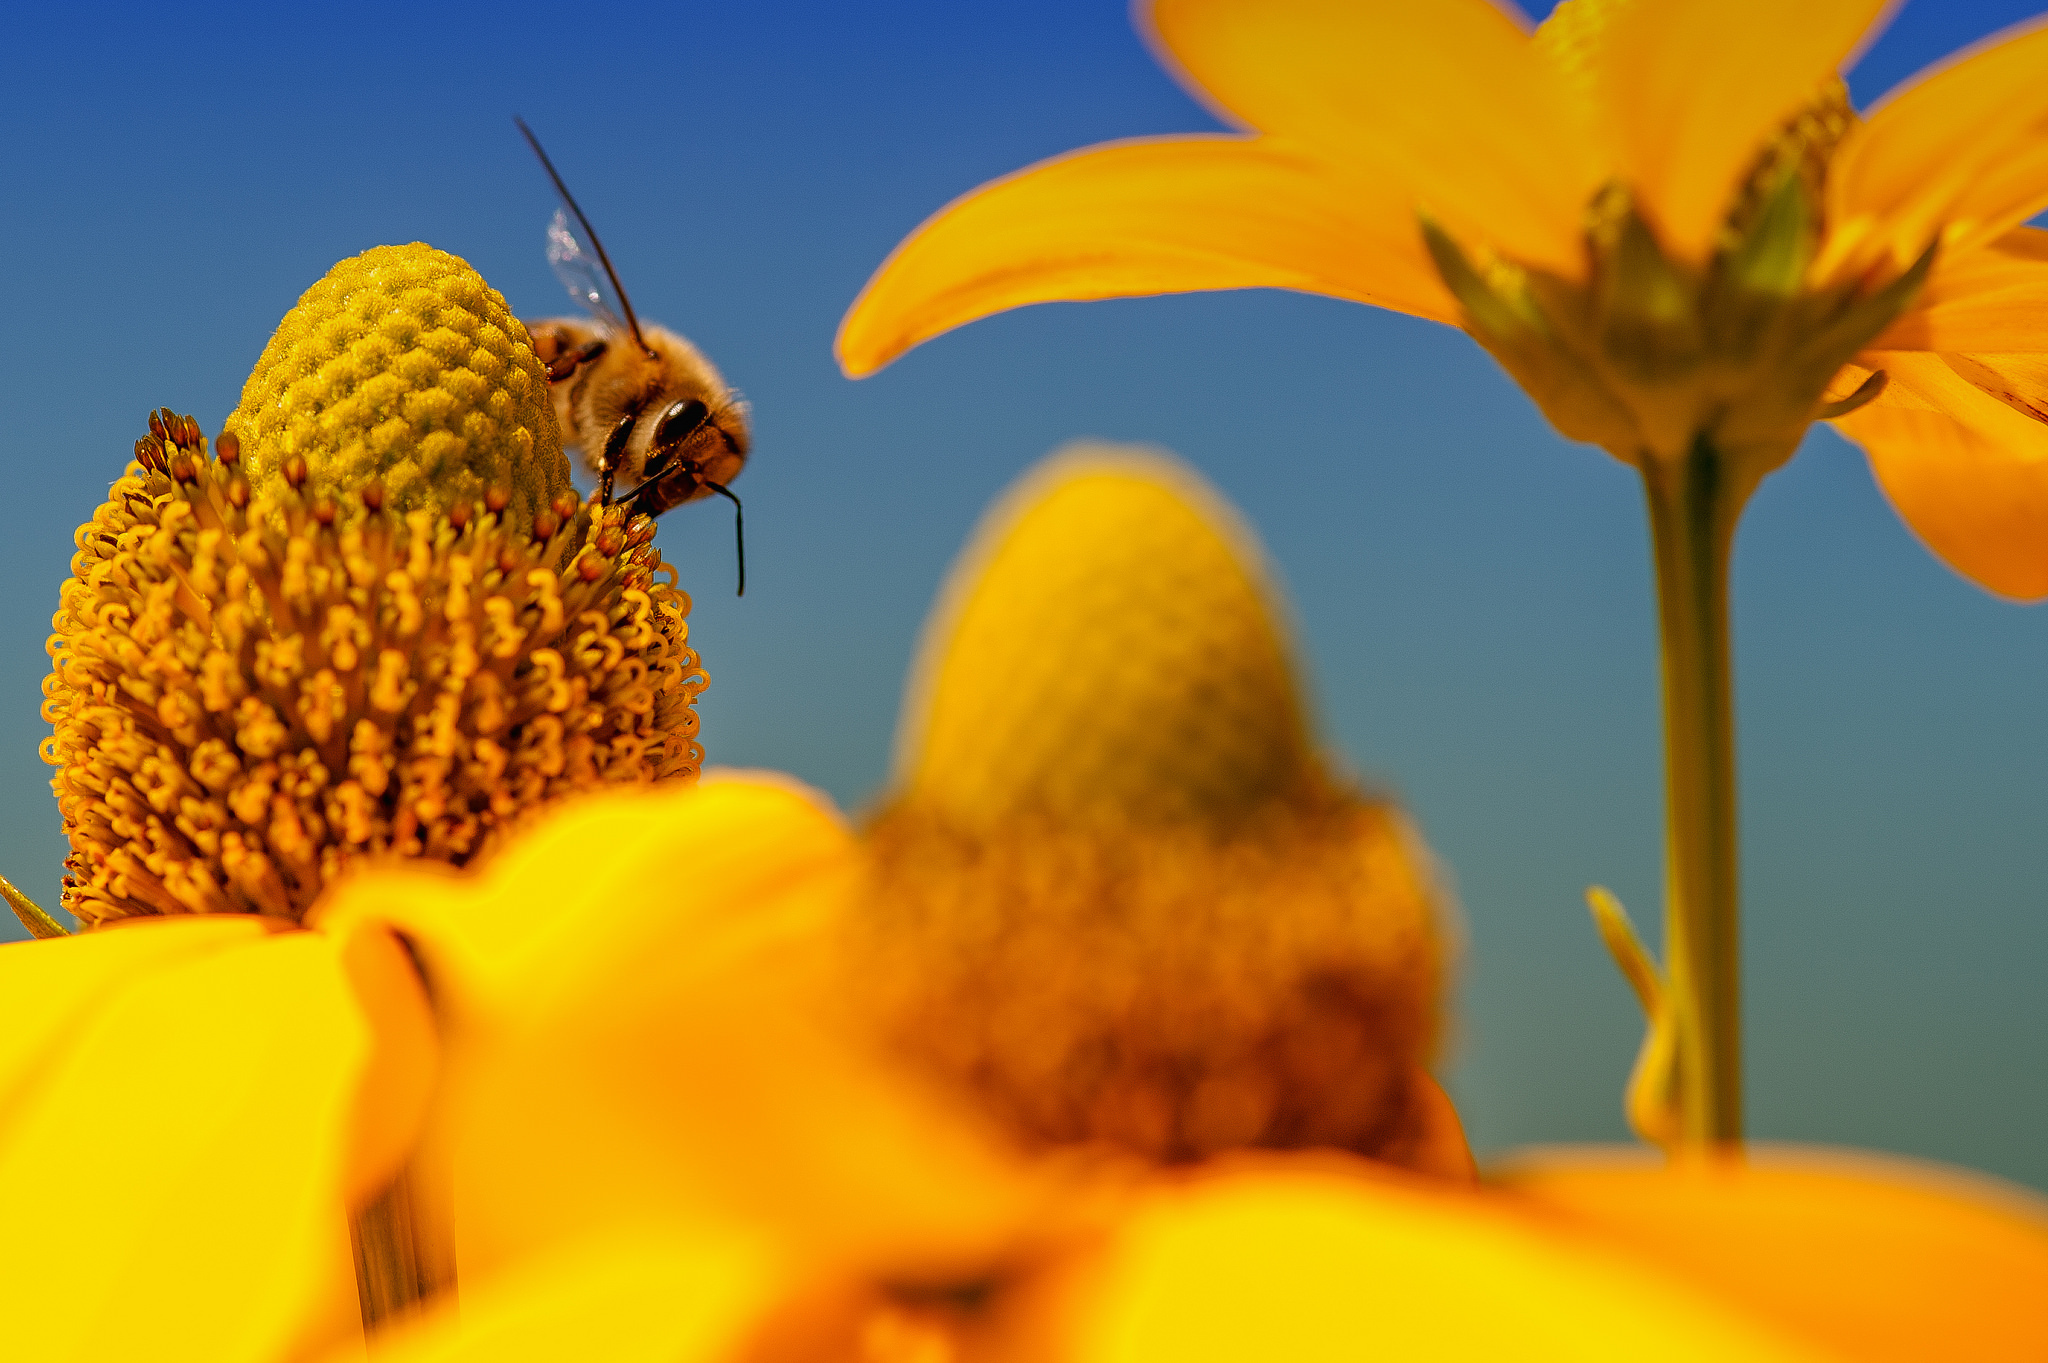 Descarga gratuita de fondo de pantalla para móvil de Animales, Insectos, Flor, Insecto, Abeja, Flor Amarilla, Macrofotografía.